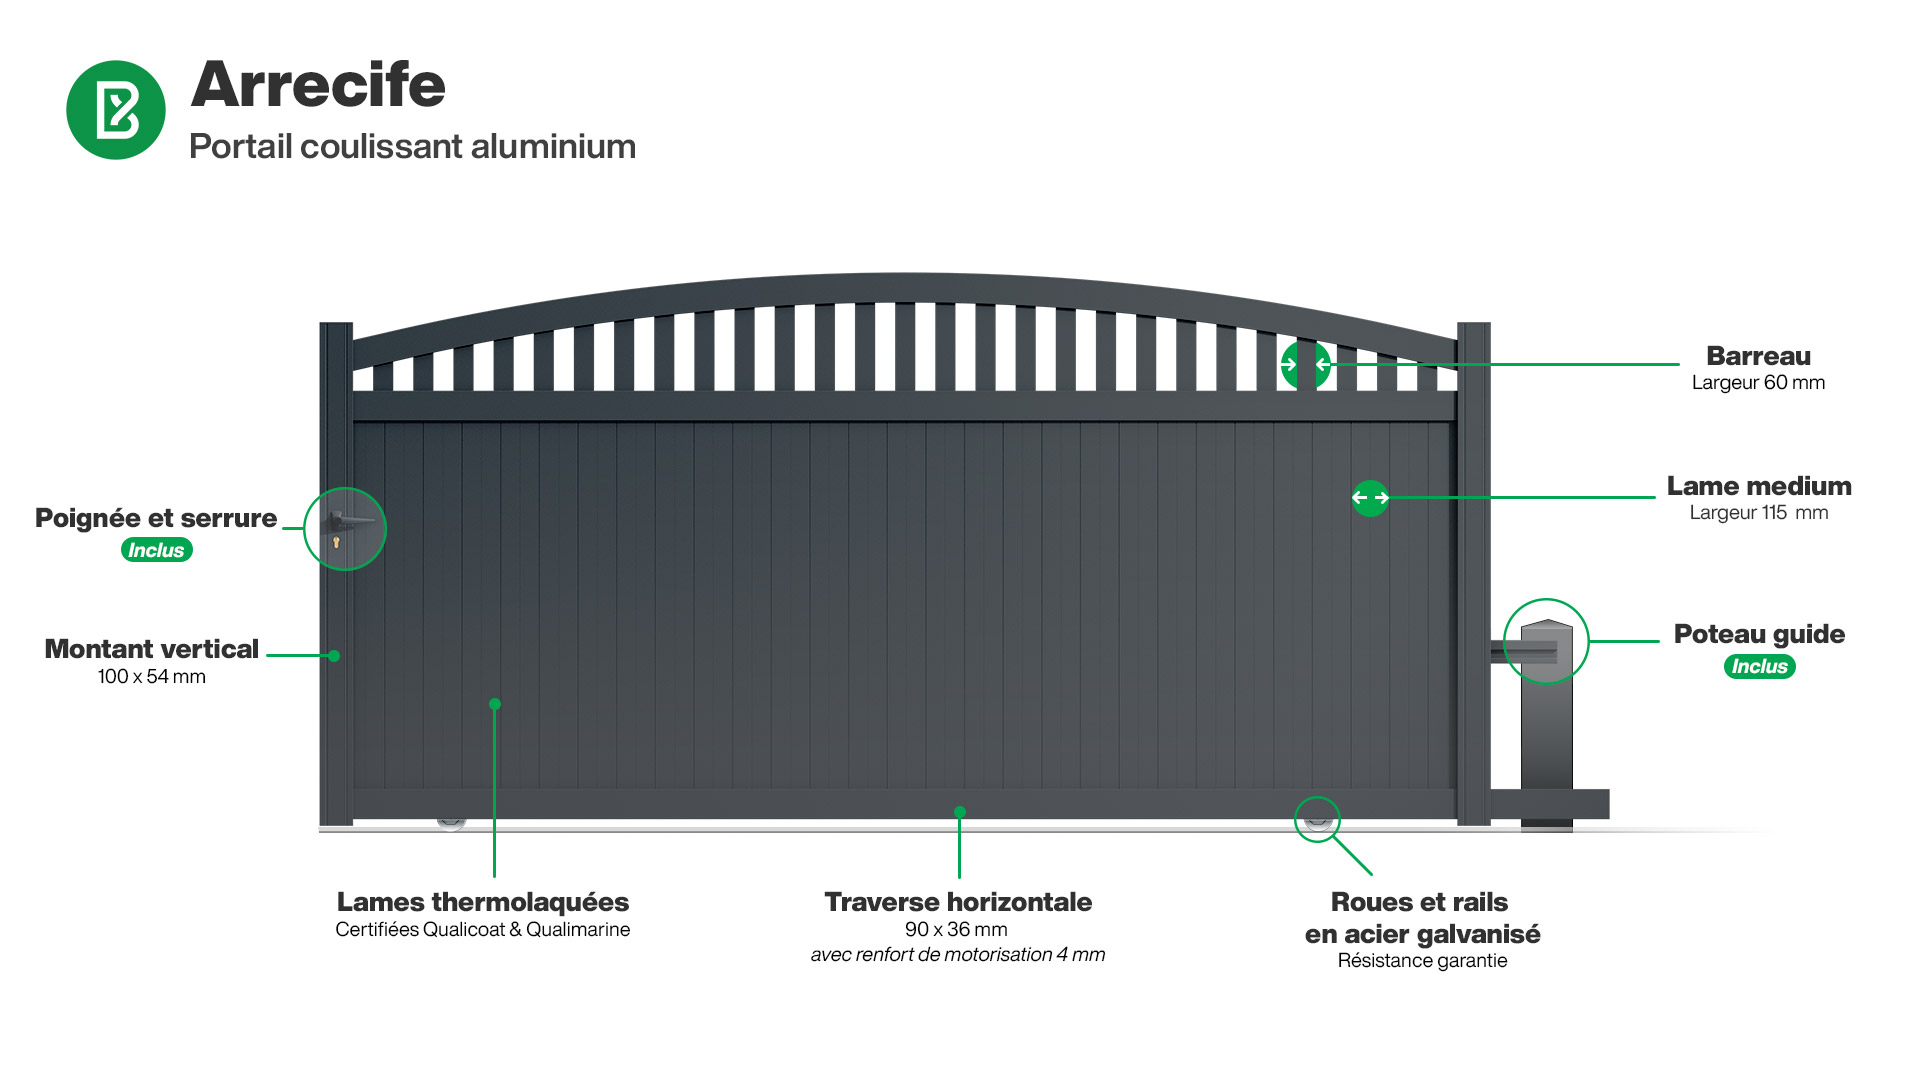 Portail : Infographie d'un portail coulissant aluminium modèle ARRECIFE